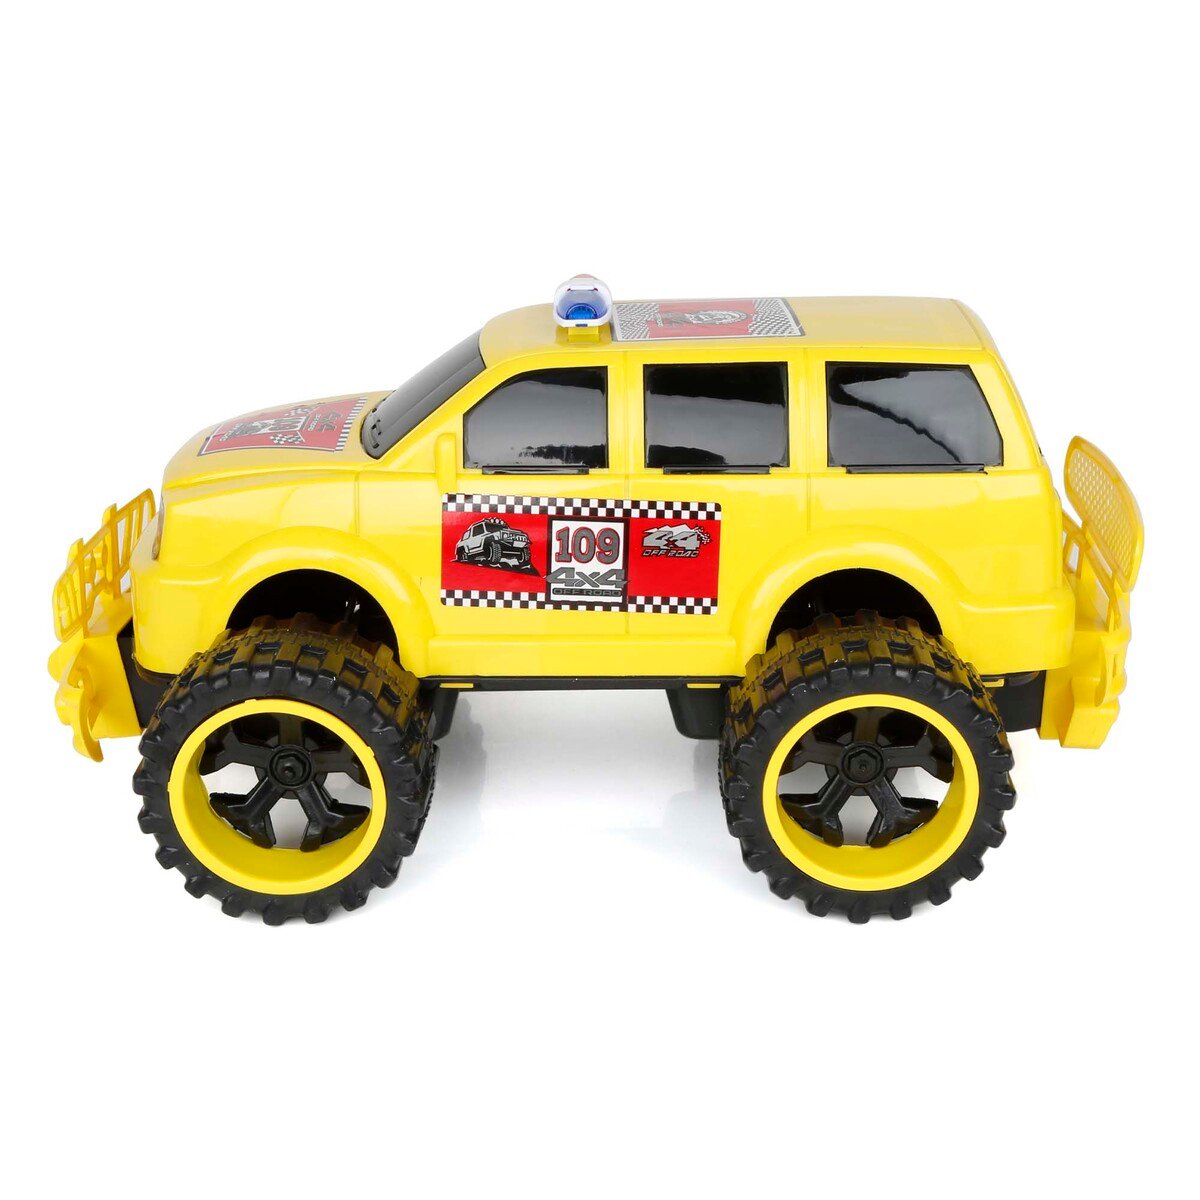 Clk Toys Mini Monster Model Car CLK-274